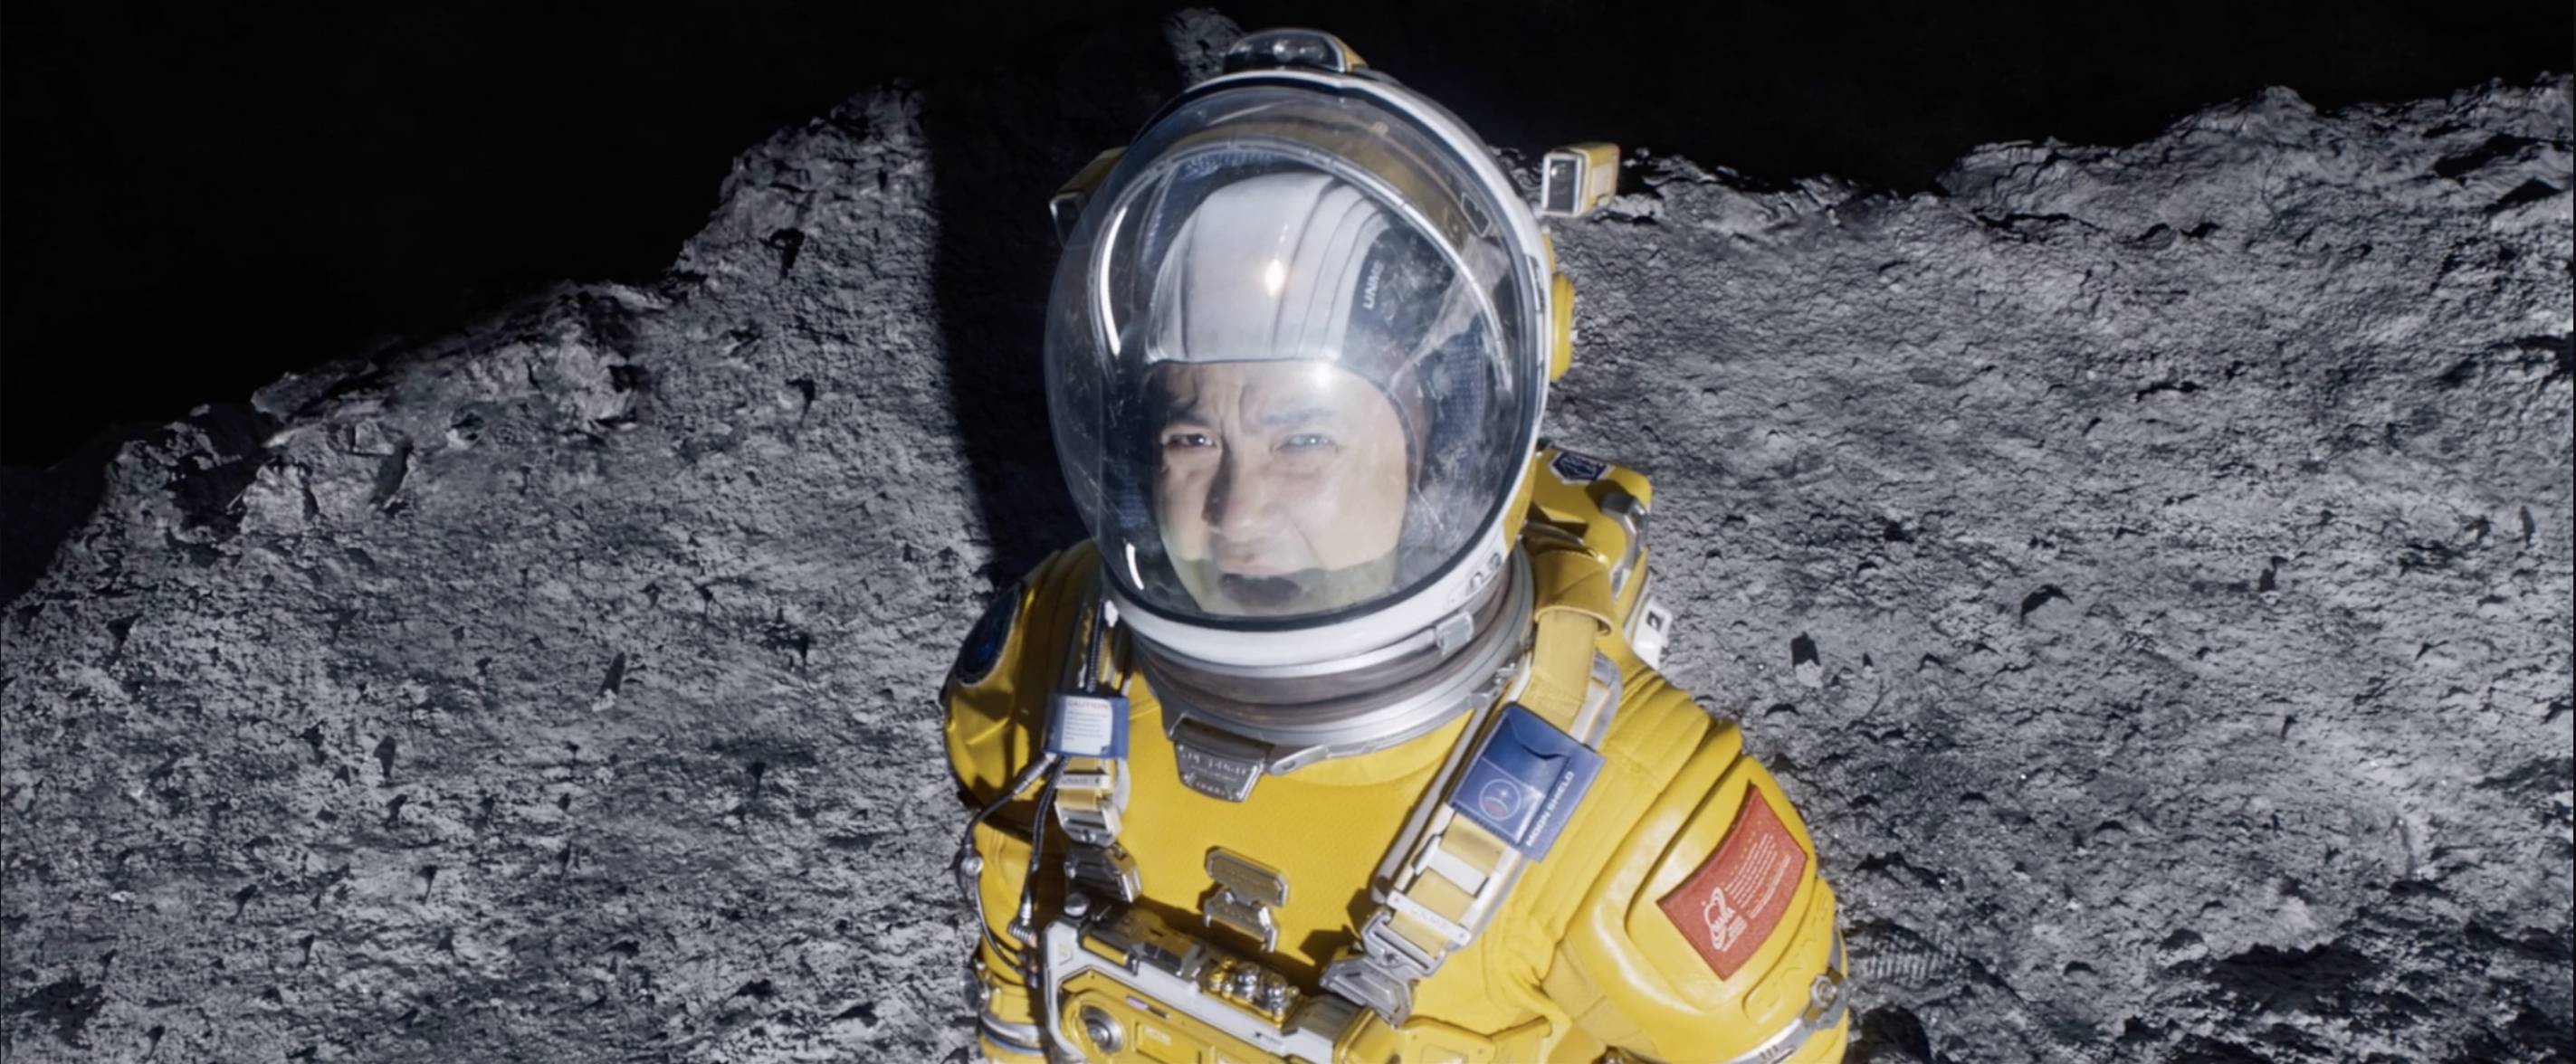 WechatIMG5380 - Proprio ora, l’umanità ha completato la prima missione di difesa planetaria in assoluto! “Walking on the Moon” si sta avverando